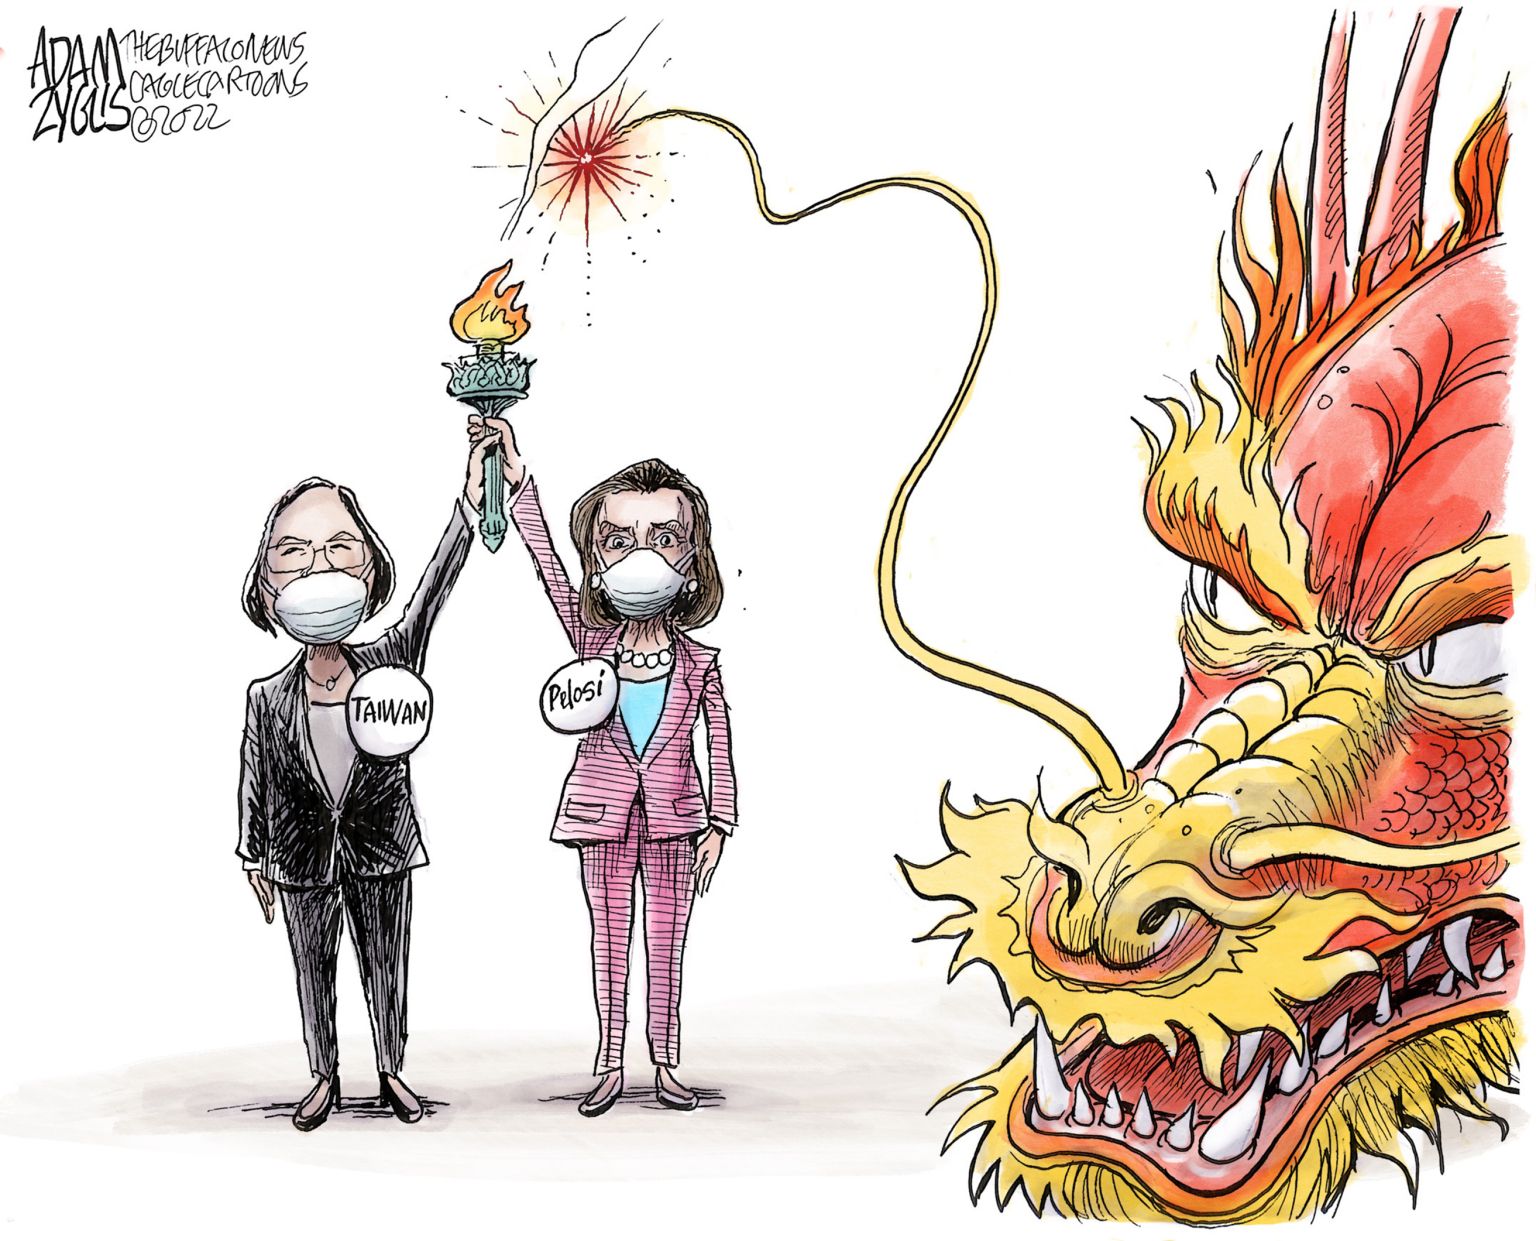 Pelosi in Taiwan - editorial cartoon - newsjustin.press